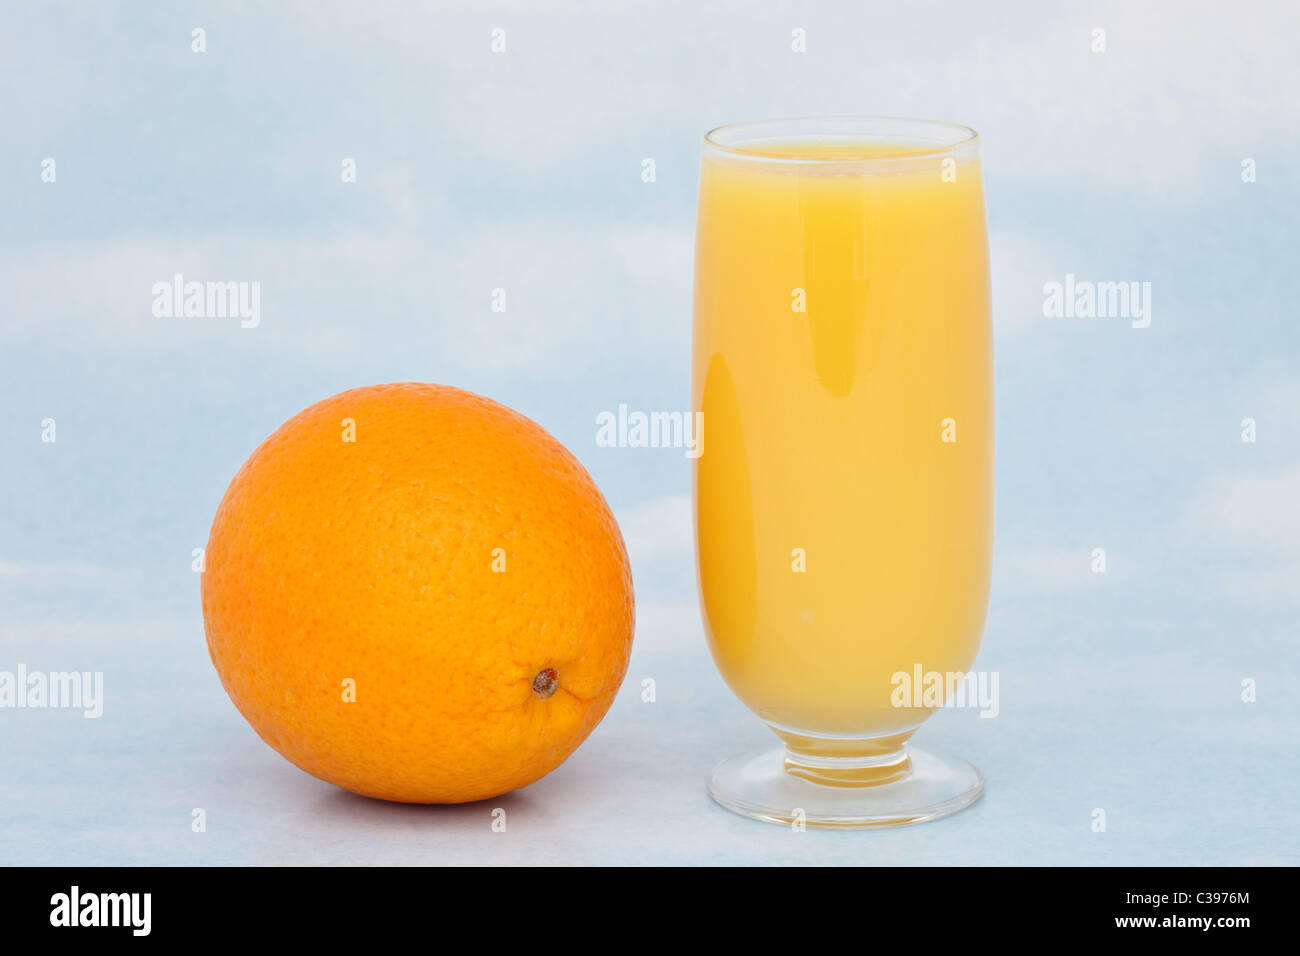 Un bicchiere di succo d'arancia fresco con un tutta arancione contenenti vitamina C contro un cielo blu sullo sfondo Foto Stock